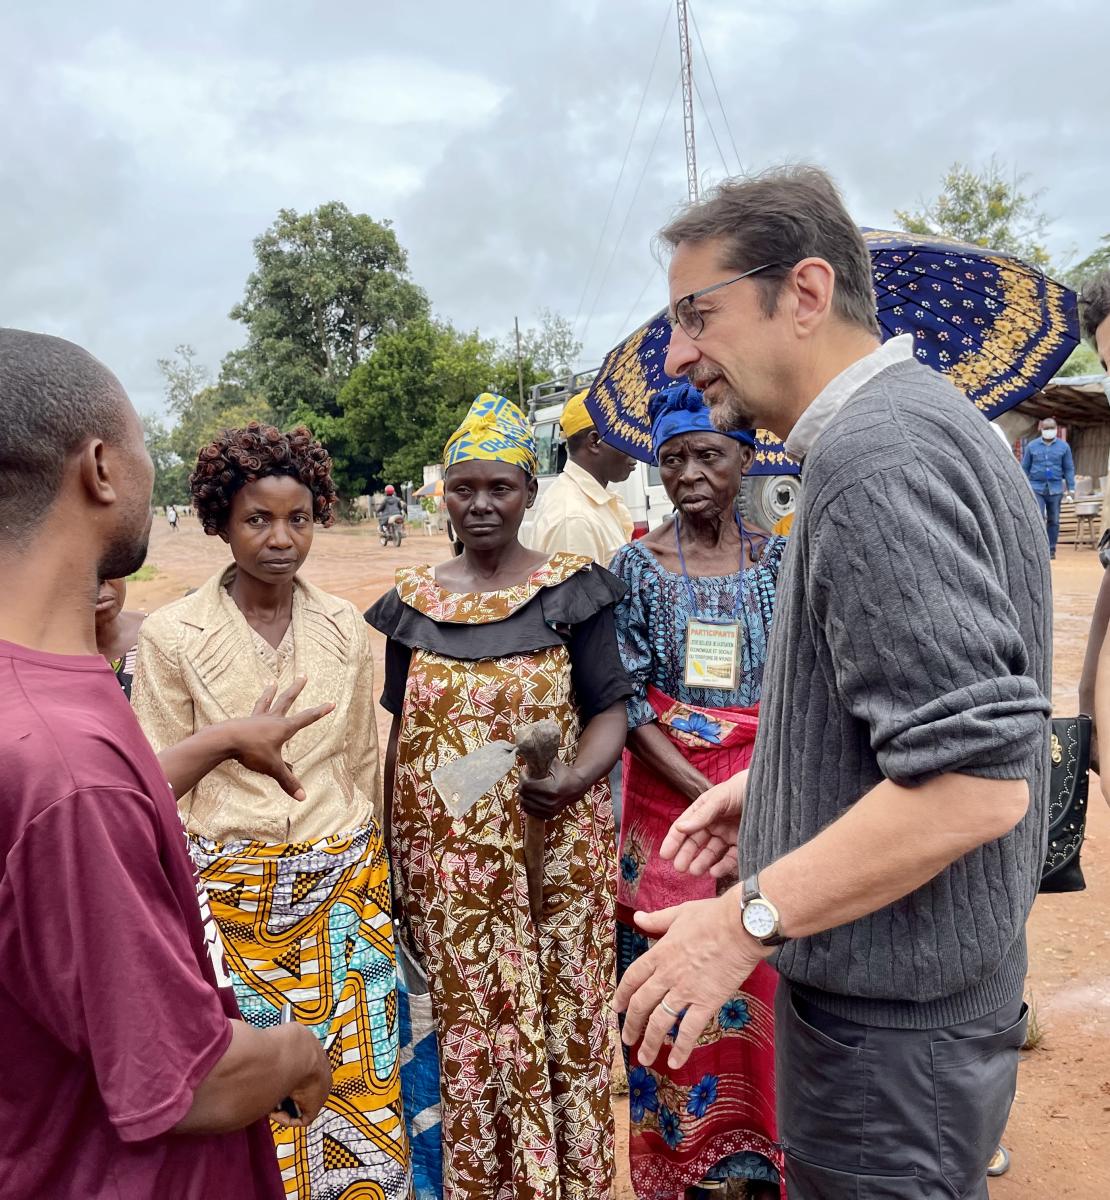 El Coordinador Residente y Humanitario de la República Democrática del Congo, Bruno Lemarquis, se reúne con los residentes de un emplazamiento de desplazados internos en Tanganyika, en el sureste de la RDC.